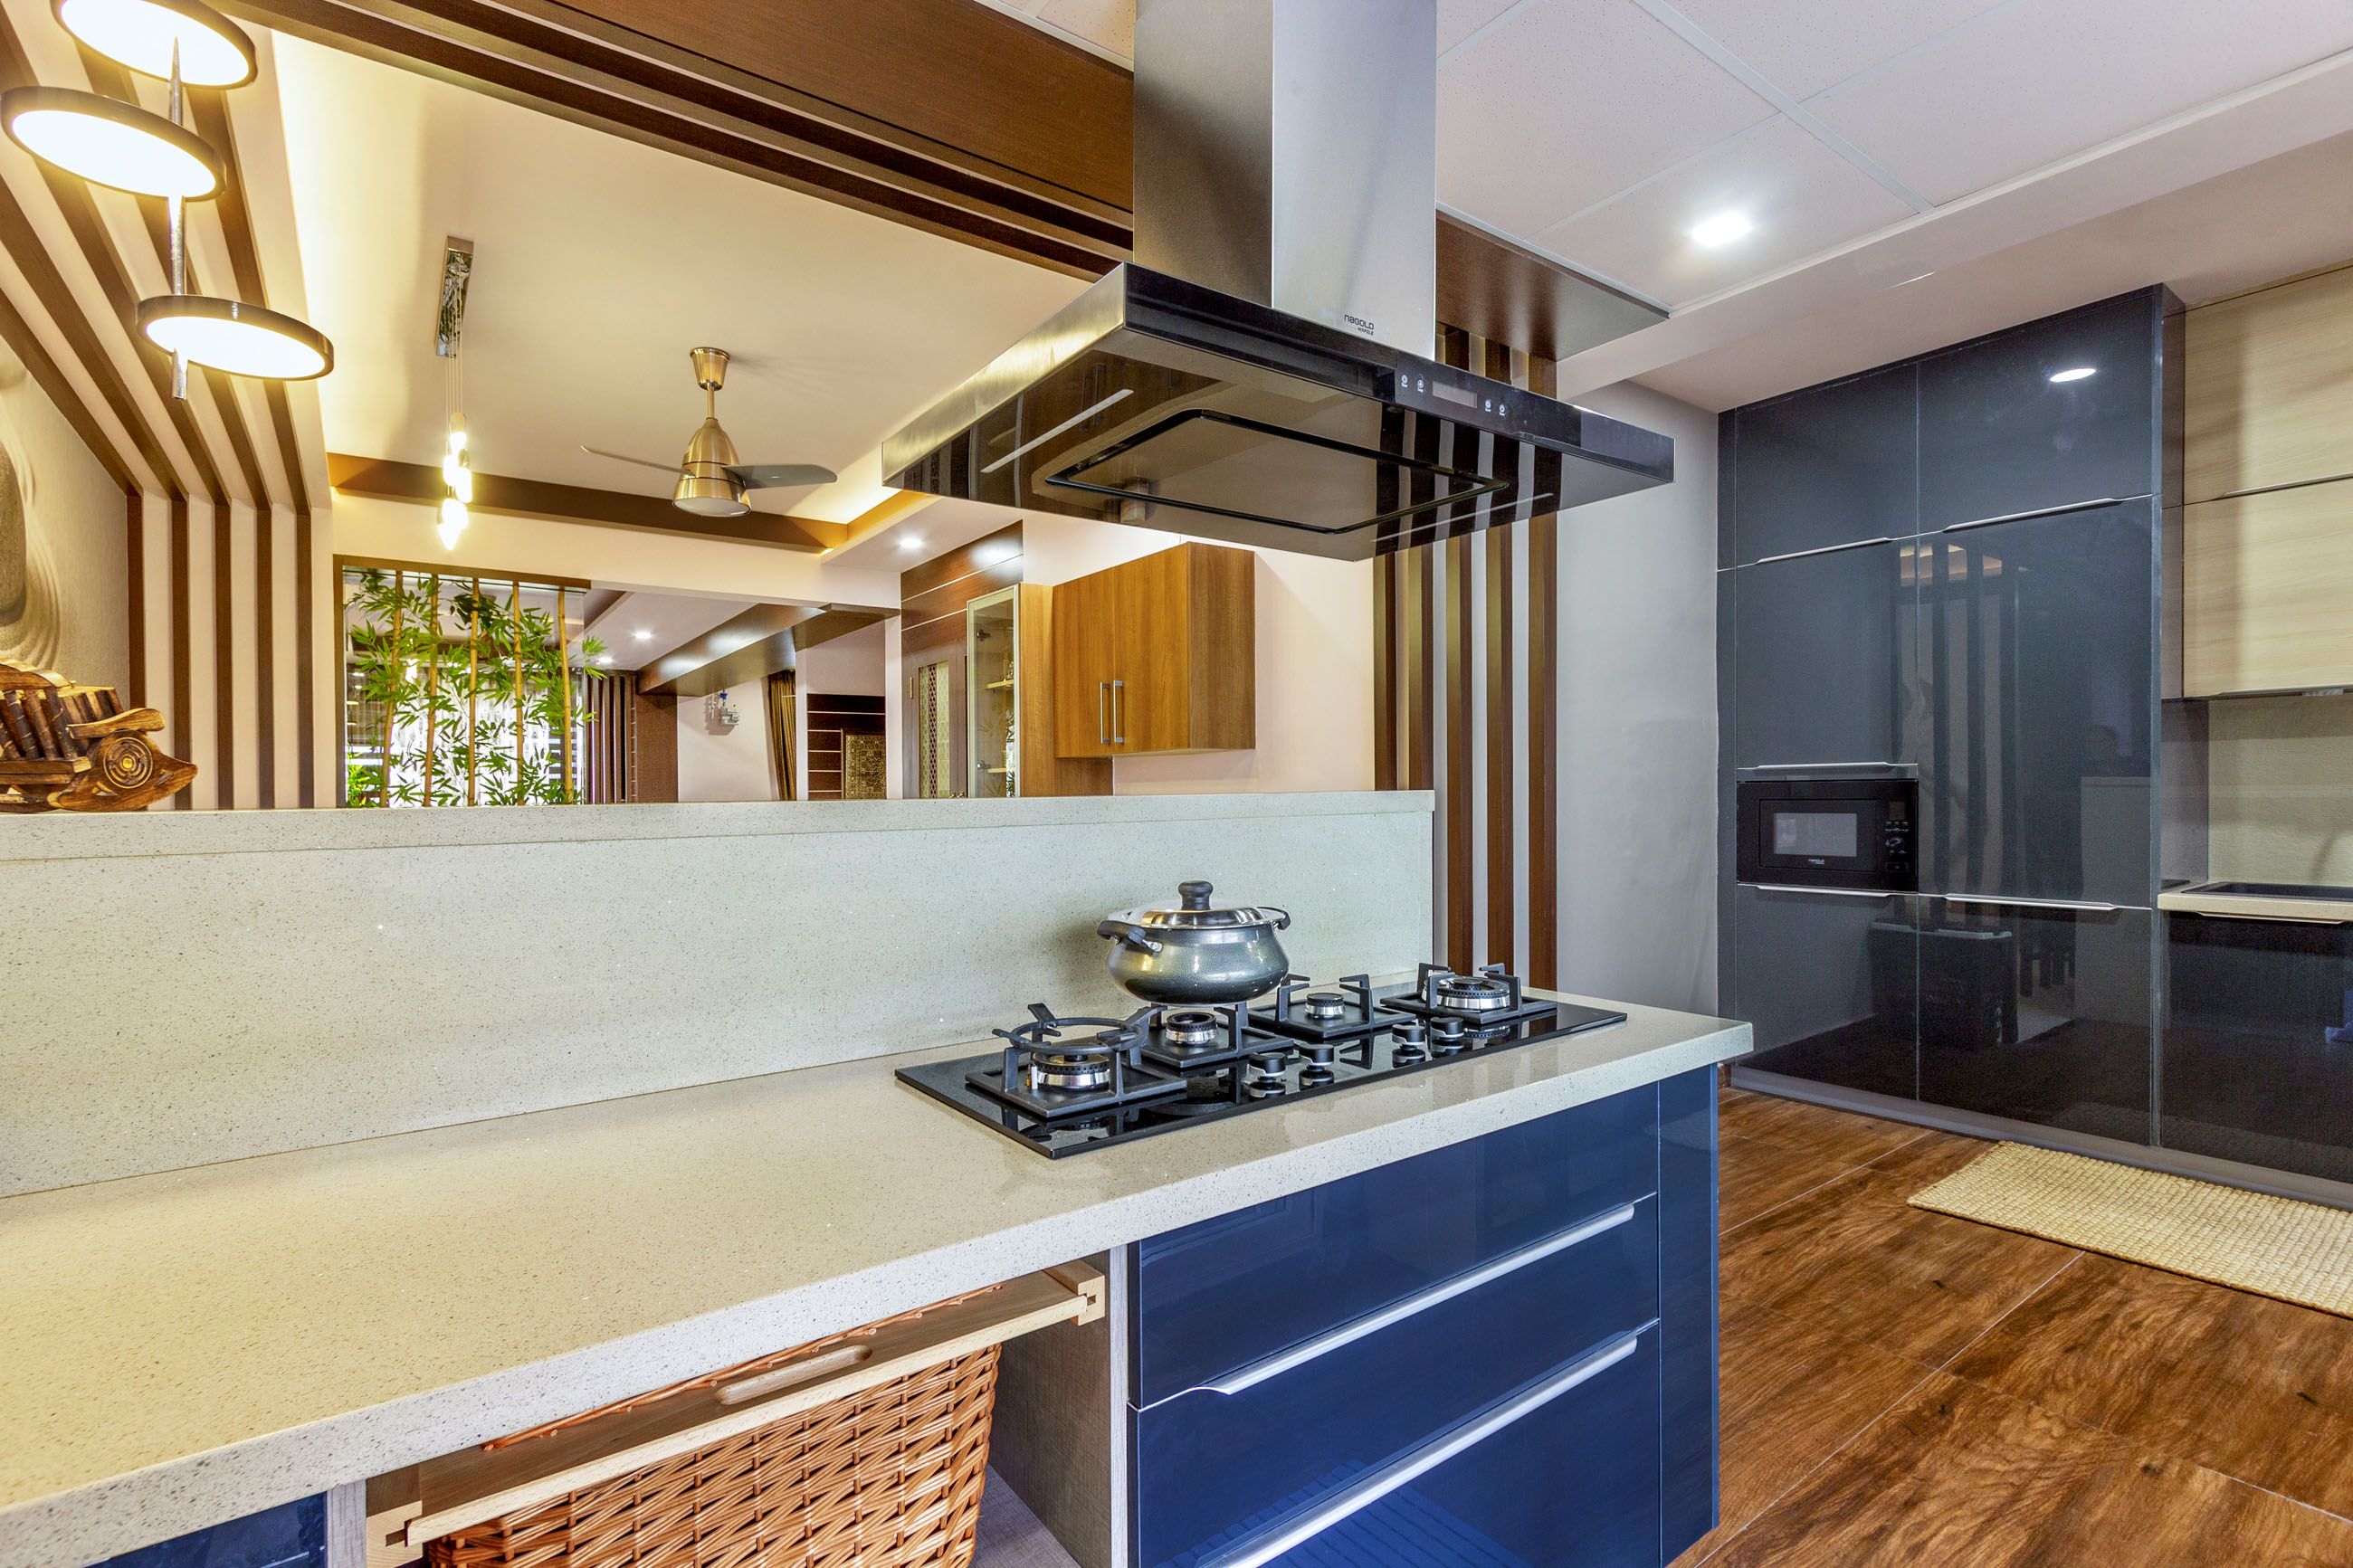 Modern Modular Island Kitchen Design With Dark Grey And Acacia Cabinets